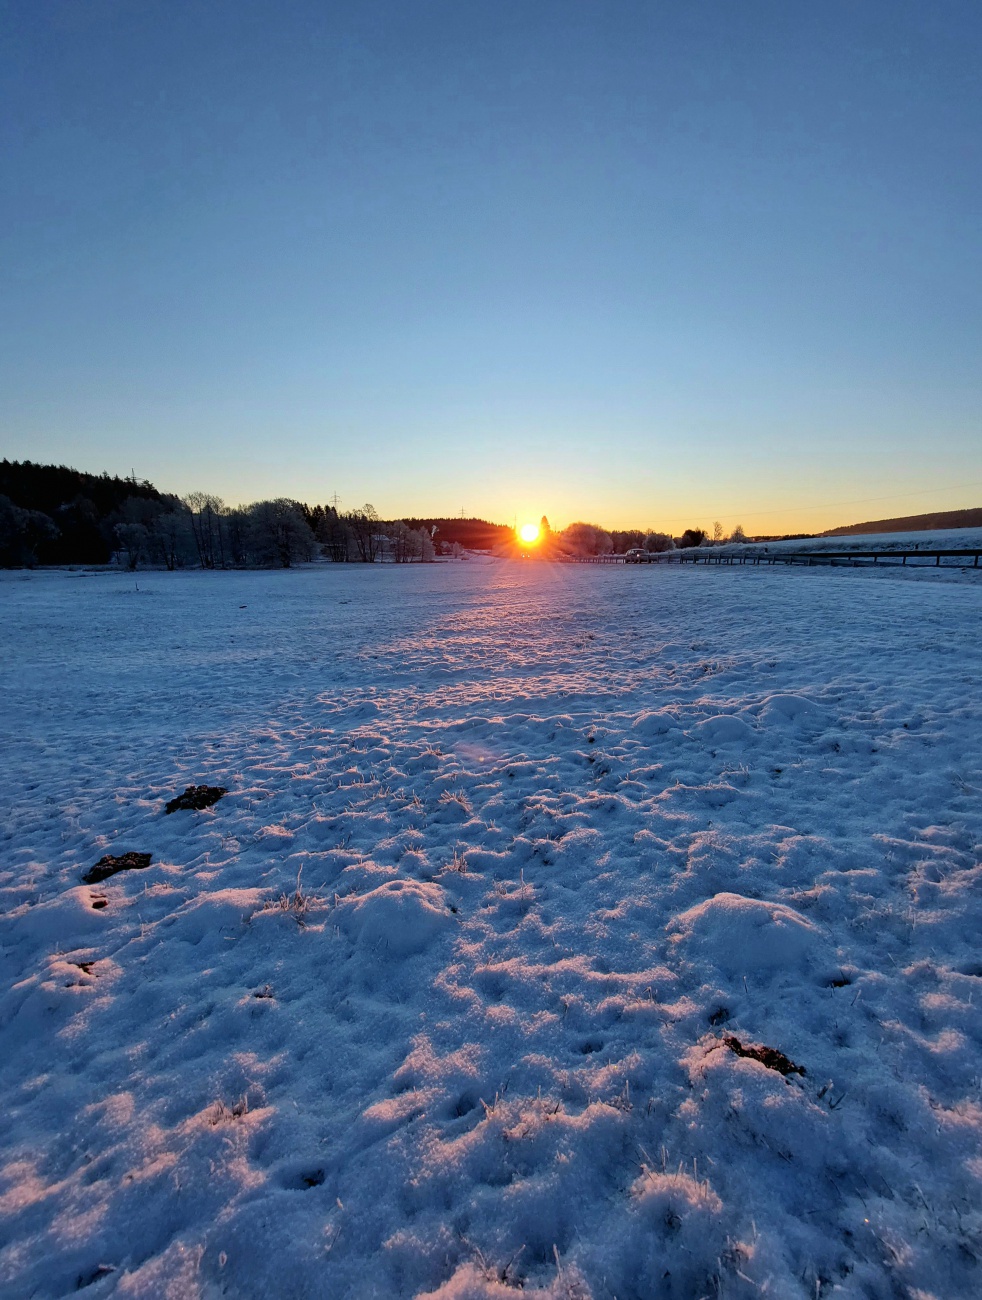 Foto: Martin Zehrer - Sonnenaufgang bei Mehlmeisel,  am 13. Dezember 2022<br />
<br />
-16 Grad Kälte und ein wunderschöner, sonniger Tag hat begonnen. 